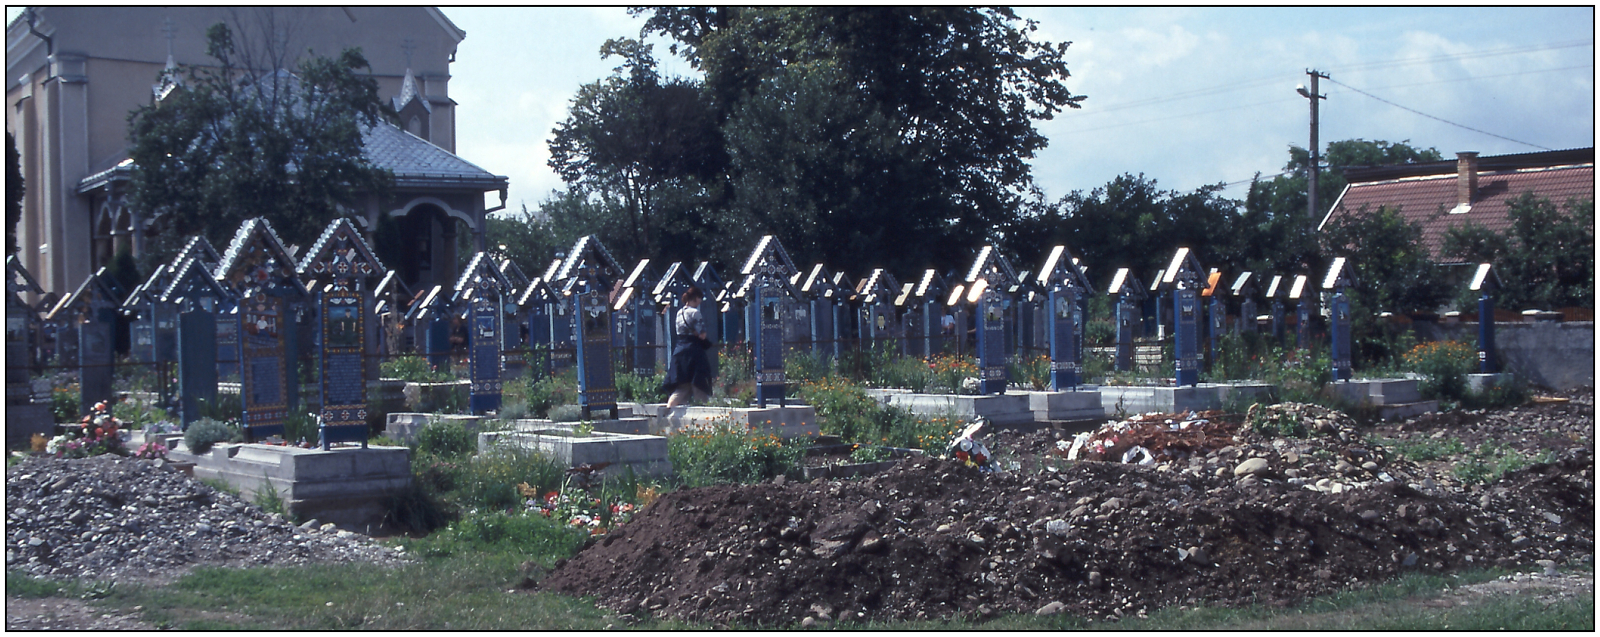 0002 hainall vesely hrbitov rumunsko sapinta